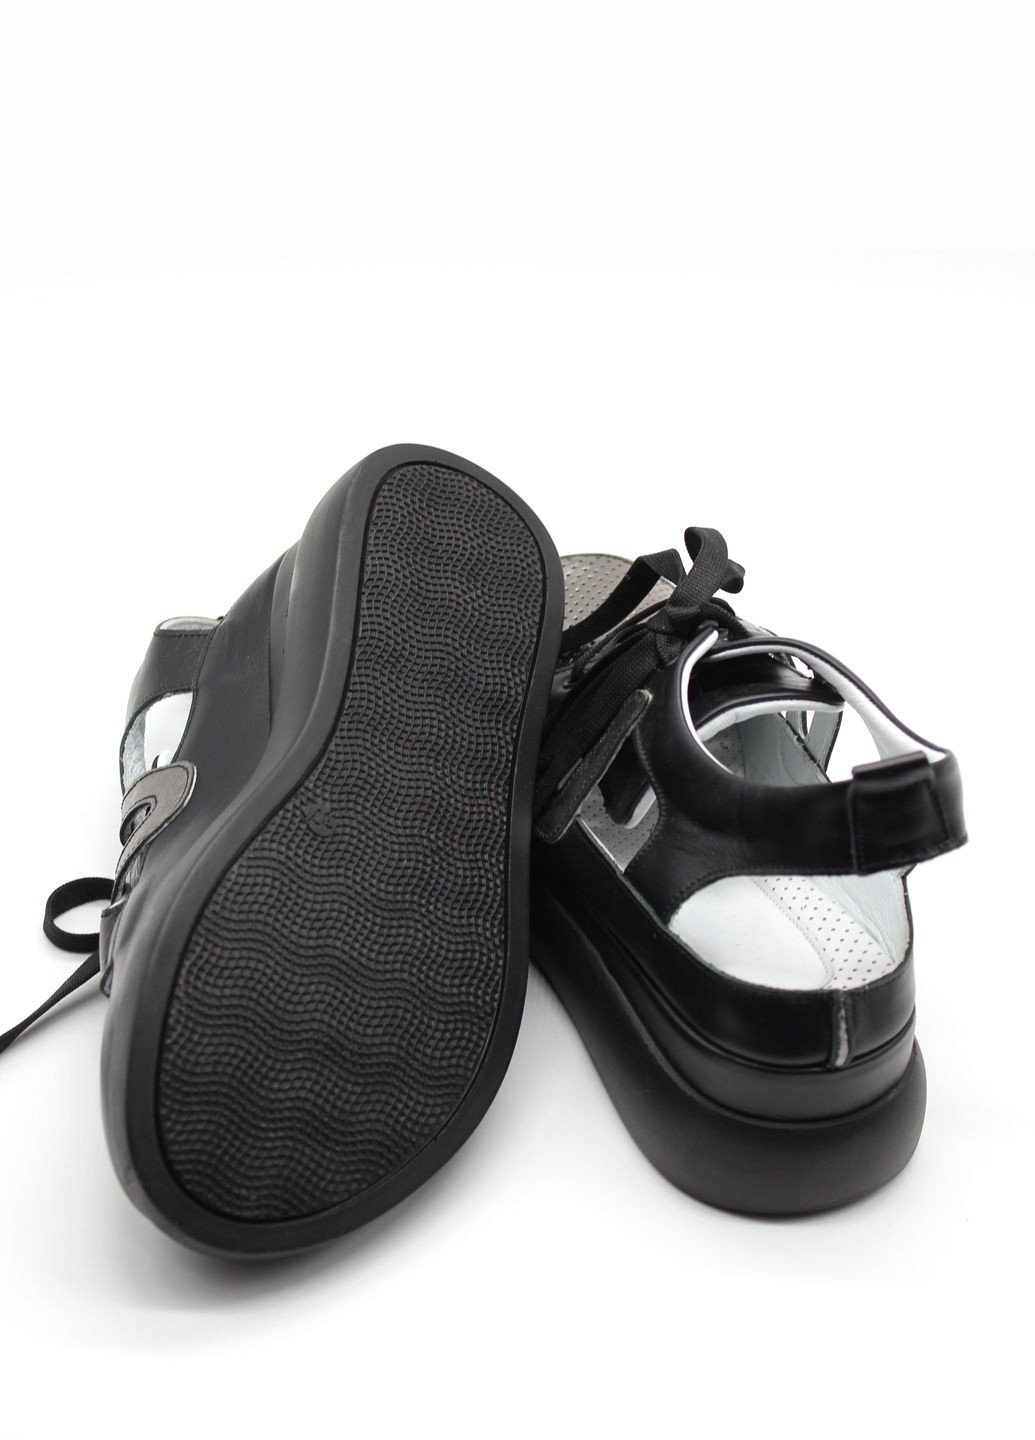 Черные босоножки Rifellini на шнурках с глиттером, со шнуровкой, с тиснением, с перфорацией